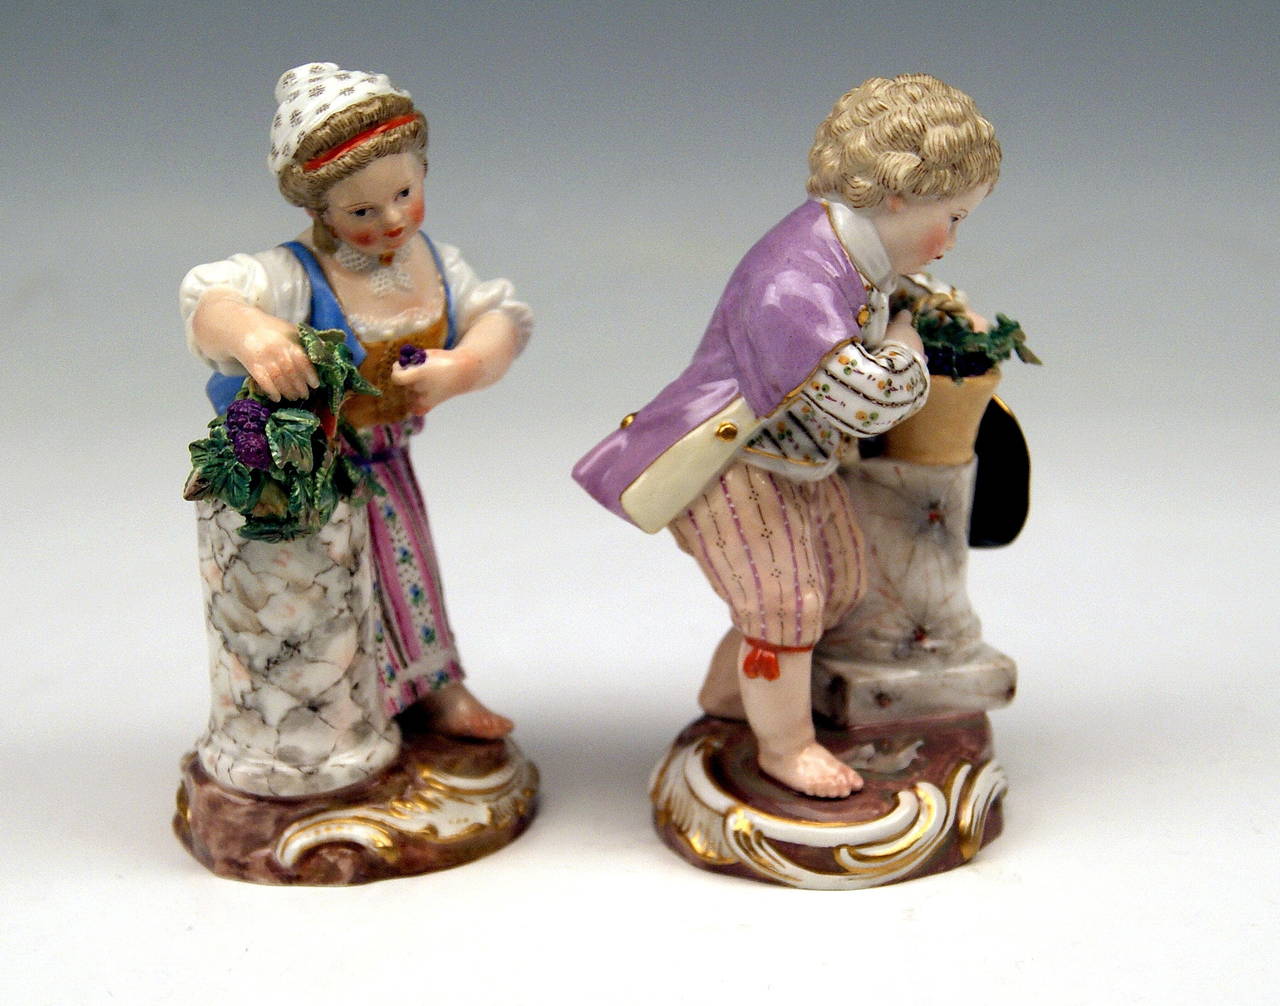 Meissen Lovely Pair of Children Season's Rococo Figurinen - Der Herbst:
Mädchen und Junge mit Weintrauben, beide stützen sich auf eine Marmorsäule
   
FERTIGUNG:  MEISSEN

DATEN:   19. Jahrhundert / hergestellt  um 1870
MATERIAL:  WEISSES PORZELLAN,